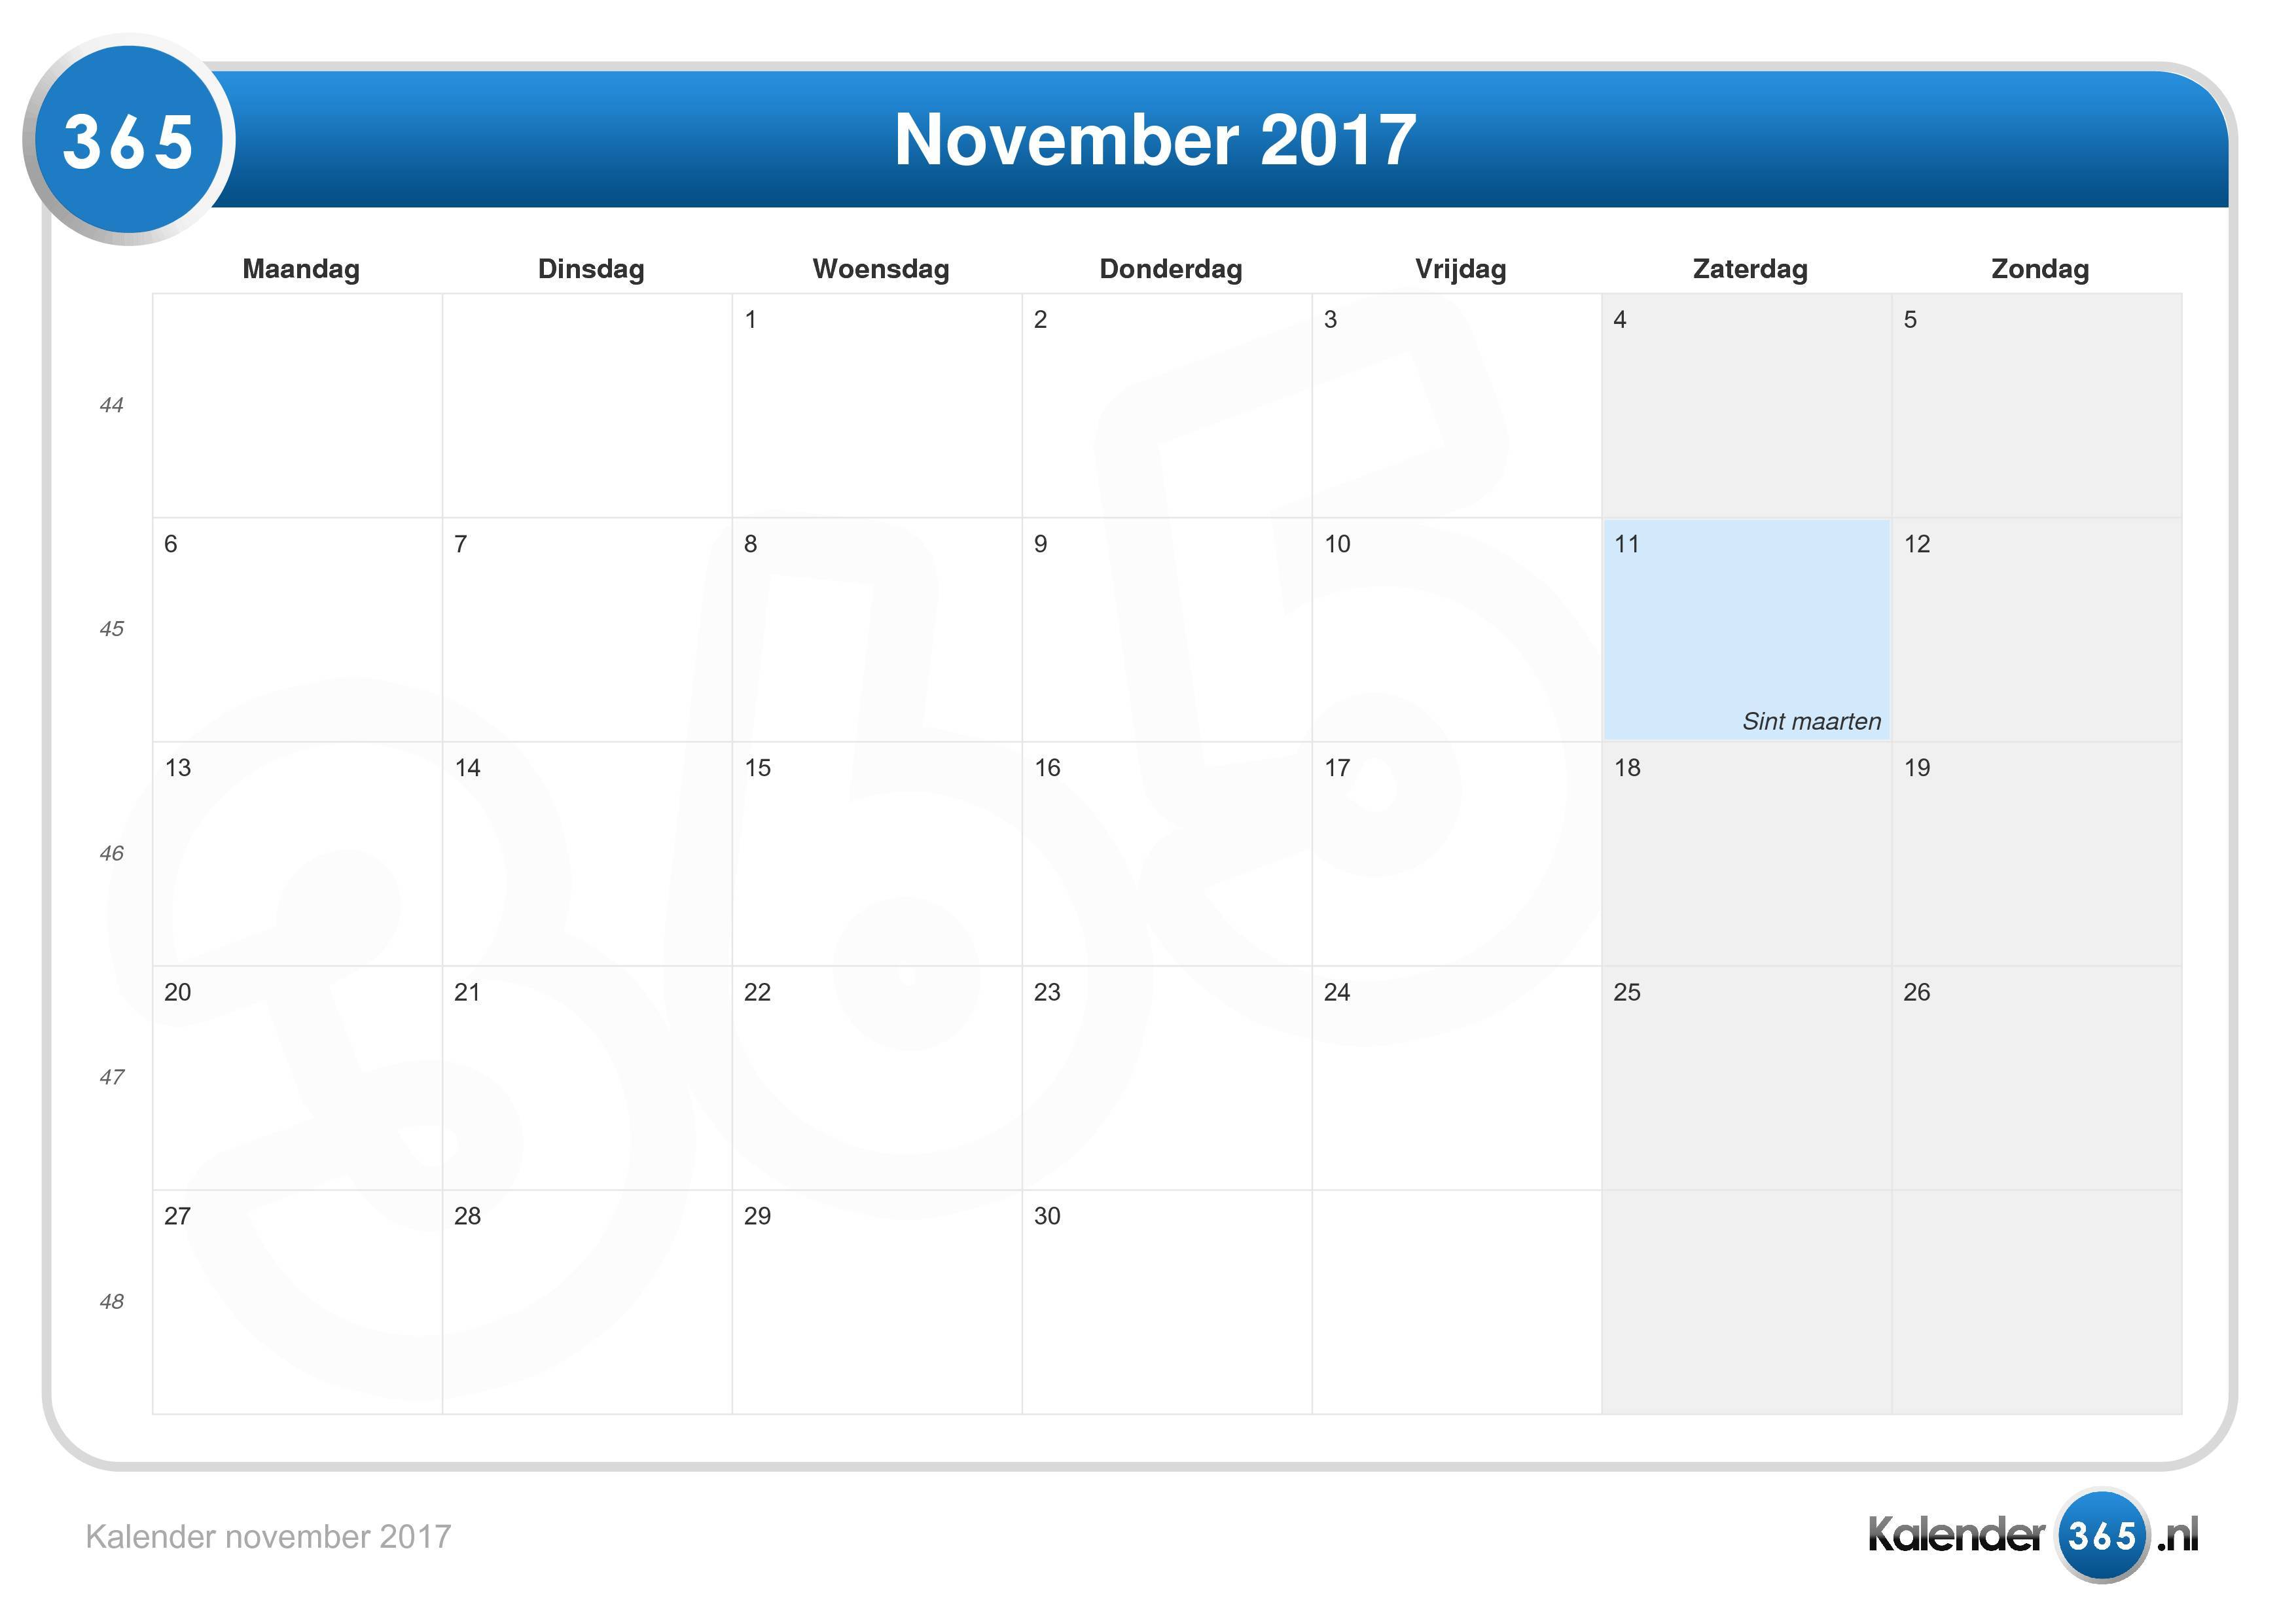 schade tijdelijk Geniet Kalender november 2017